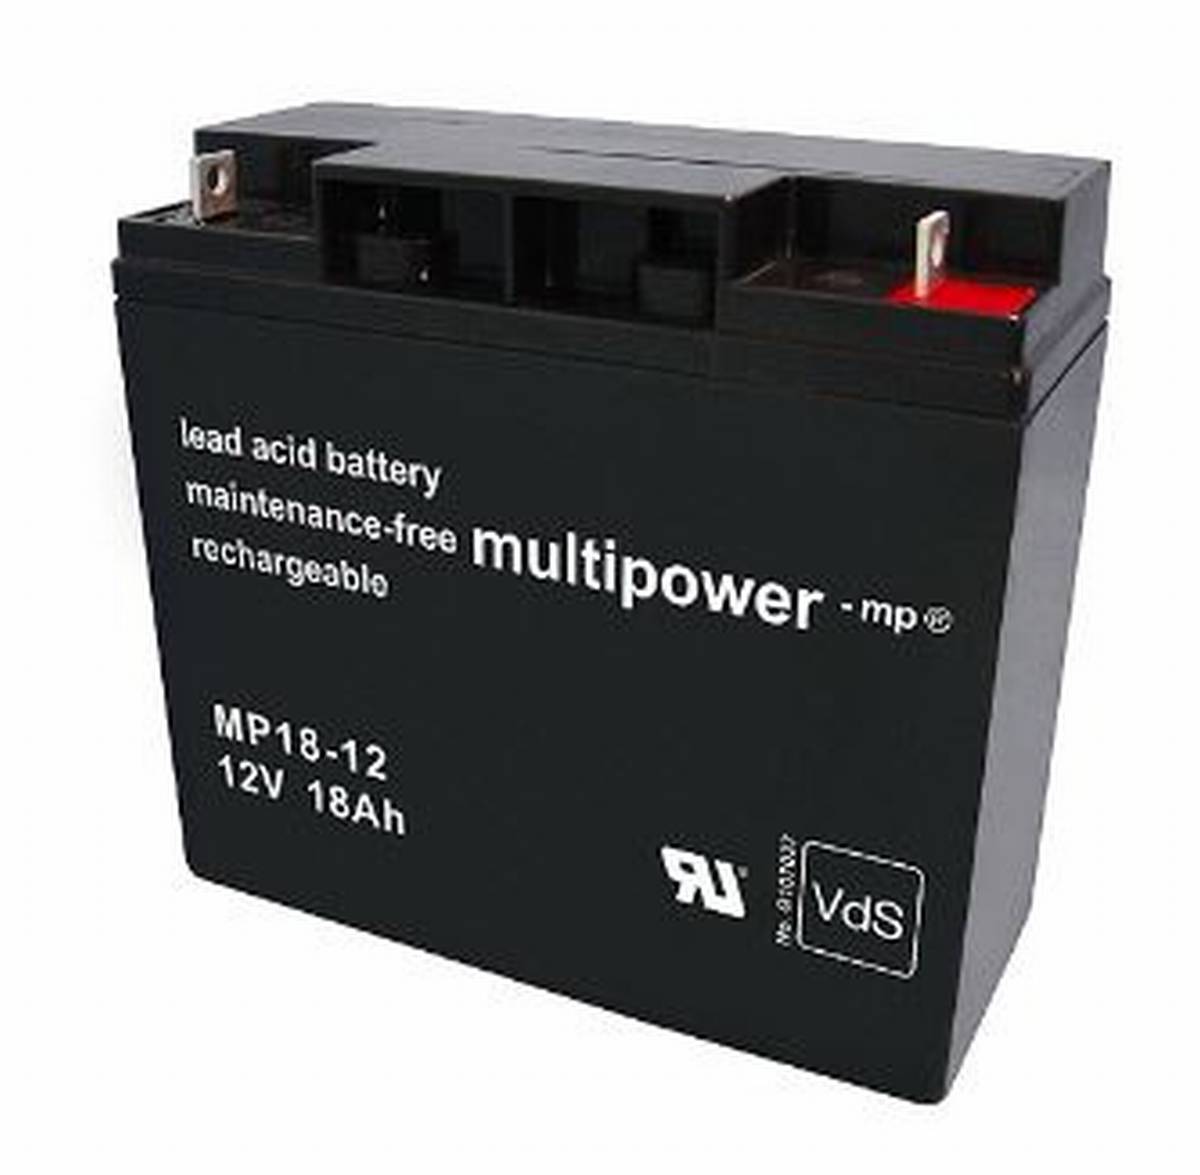 Multipower MP18-12 12V 18Ah batteria al piombo AGM con approvazione VdS